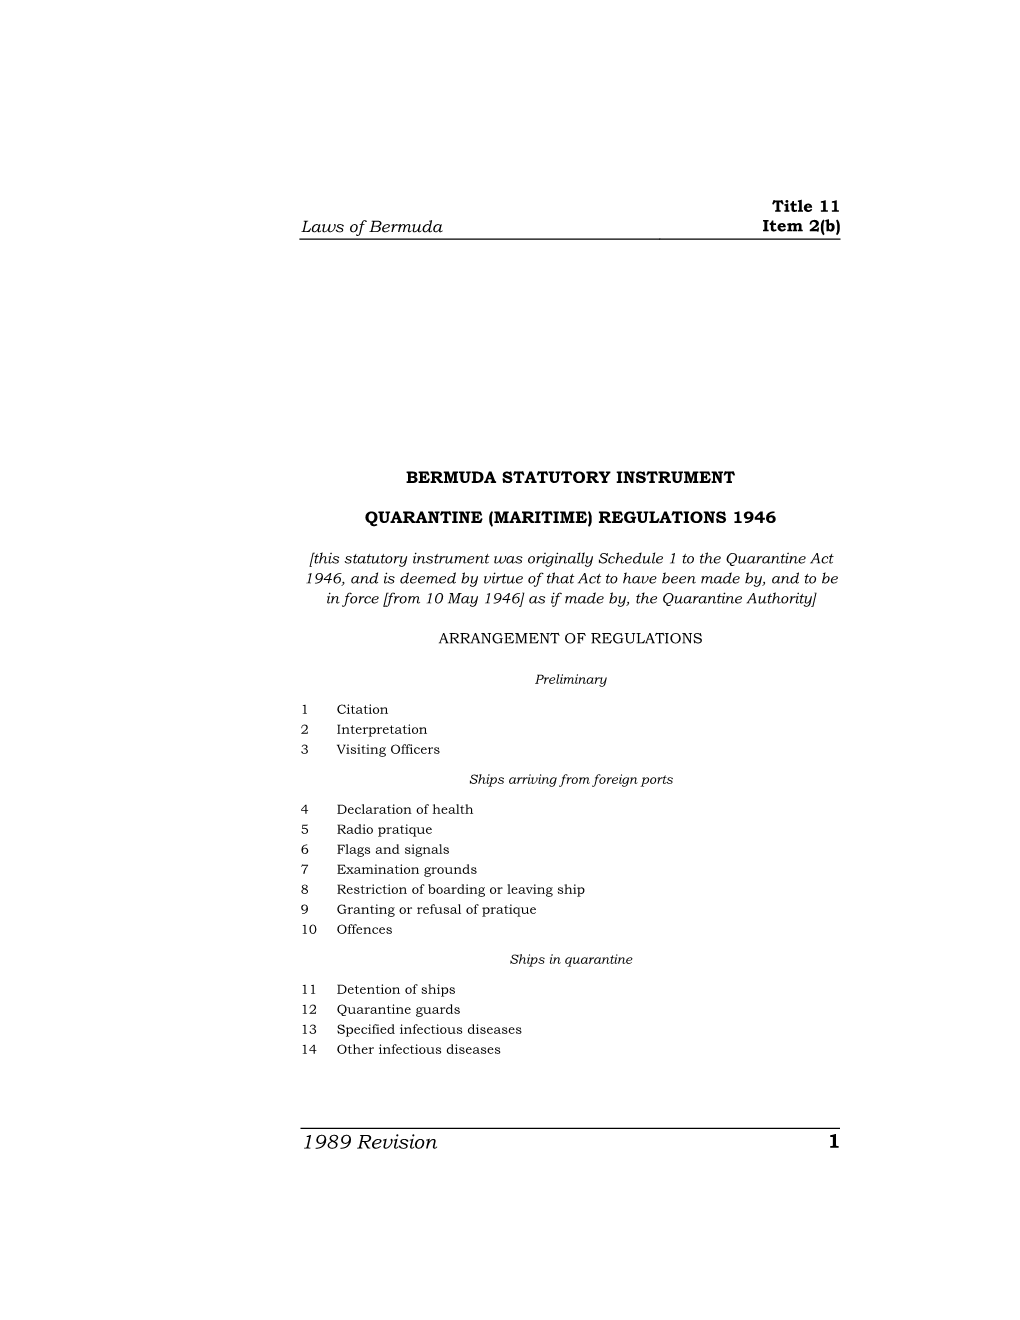 Quarantine (Maritime) Regulations 1946